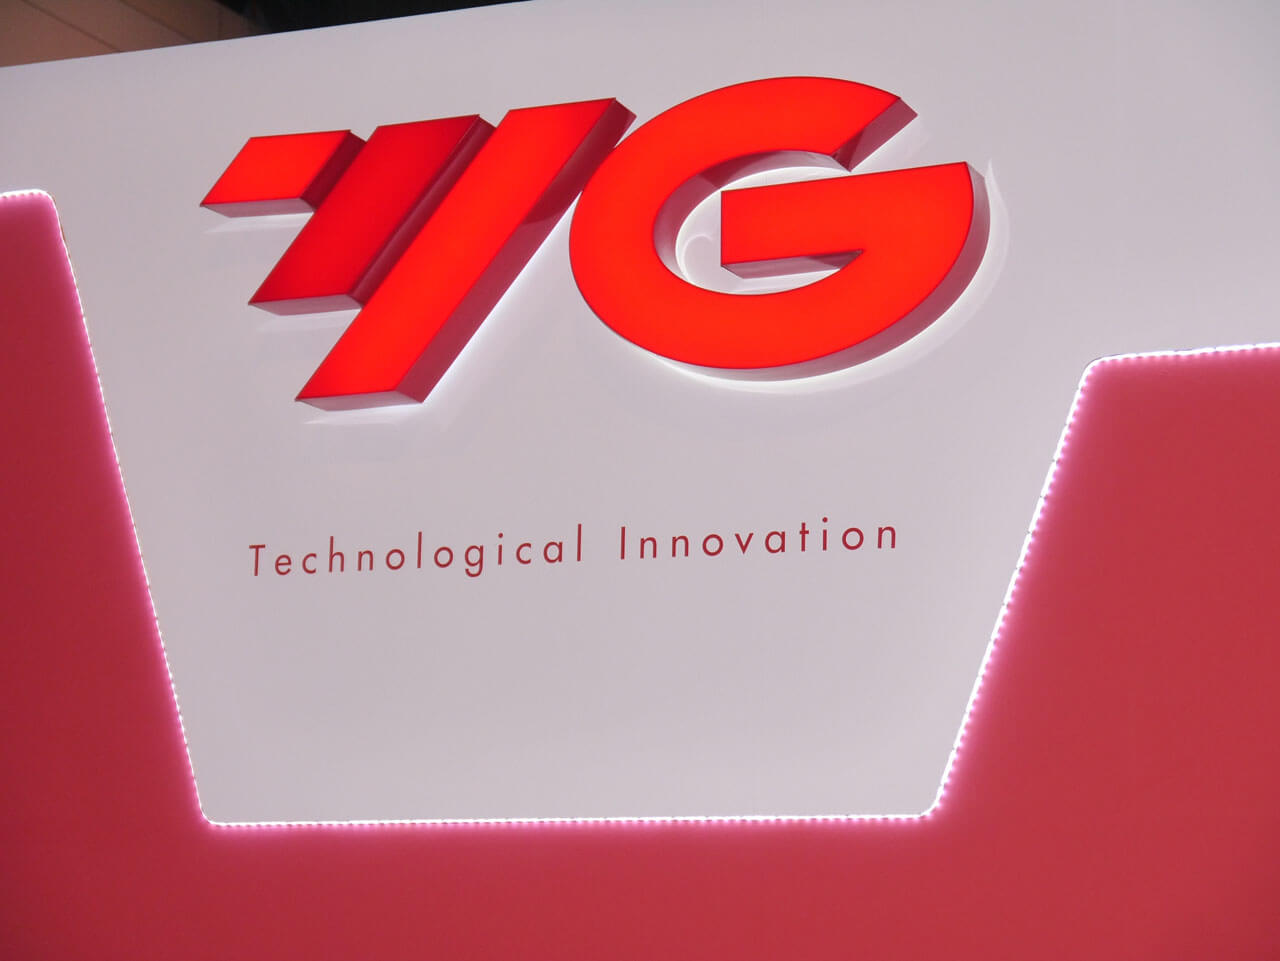 Międzynarodowe Targi Obrabiarek, Narzędzi i Technologii Obróbki TOOLEX 2014, połączone z obchodami 10-lecia firmy - YG-1